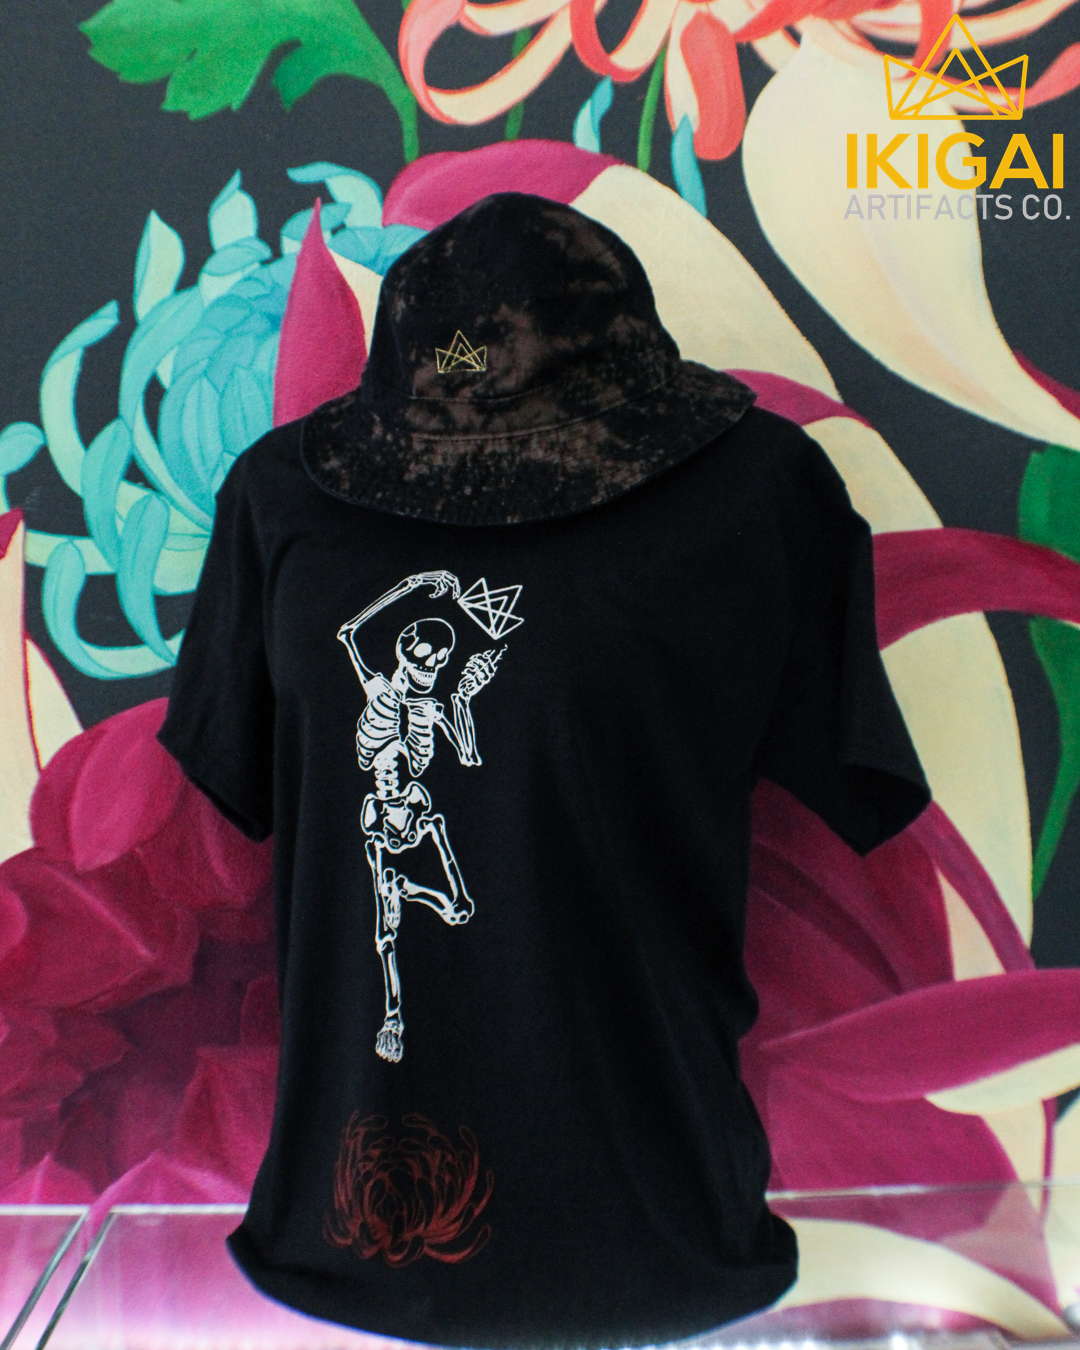 Ikigai Skeleton x Chrysanthemum Shirts - Black